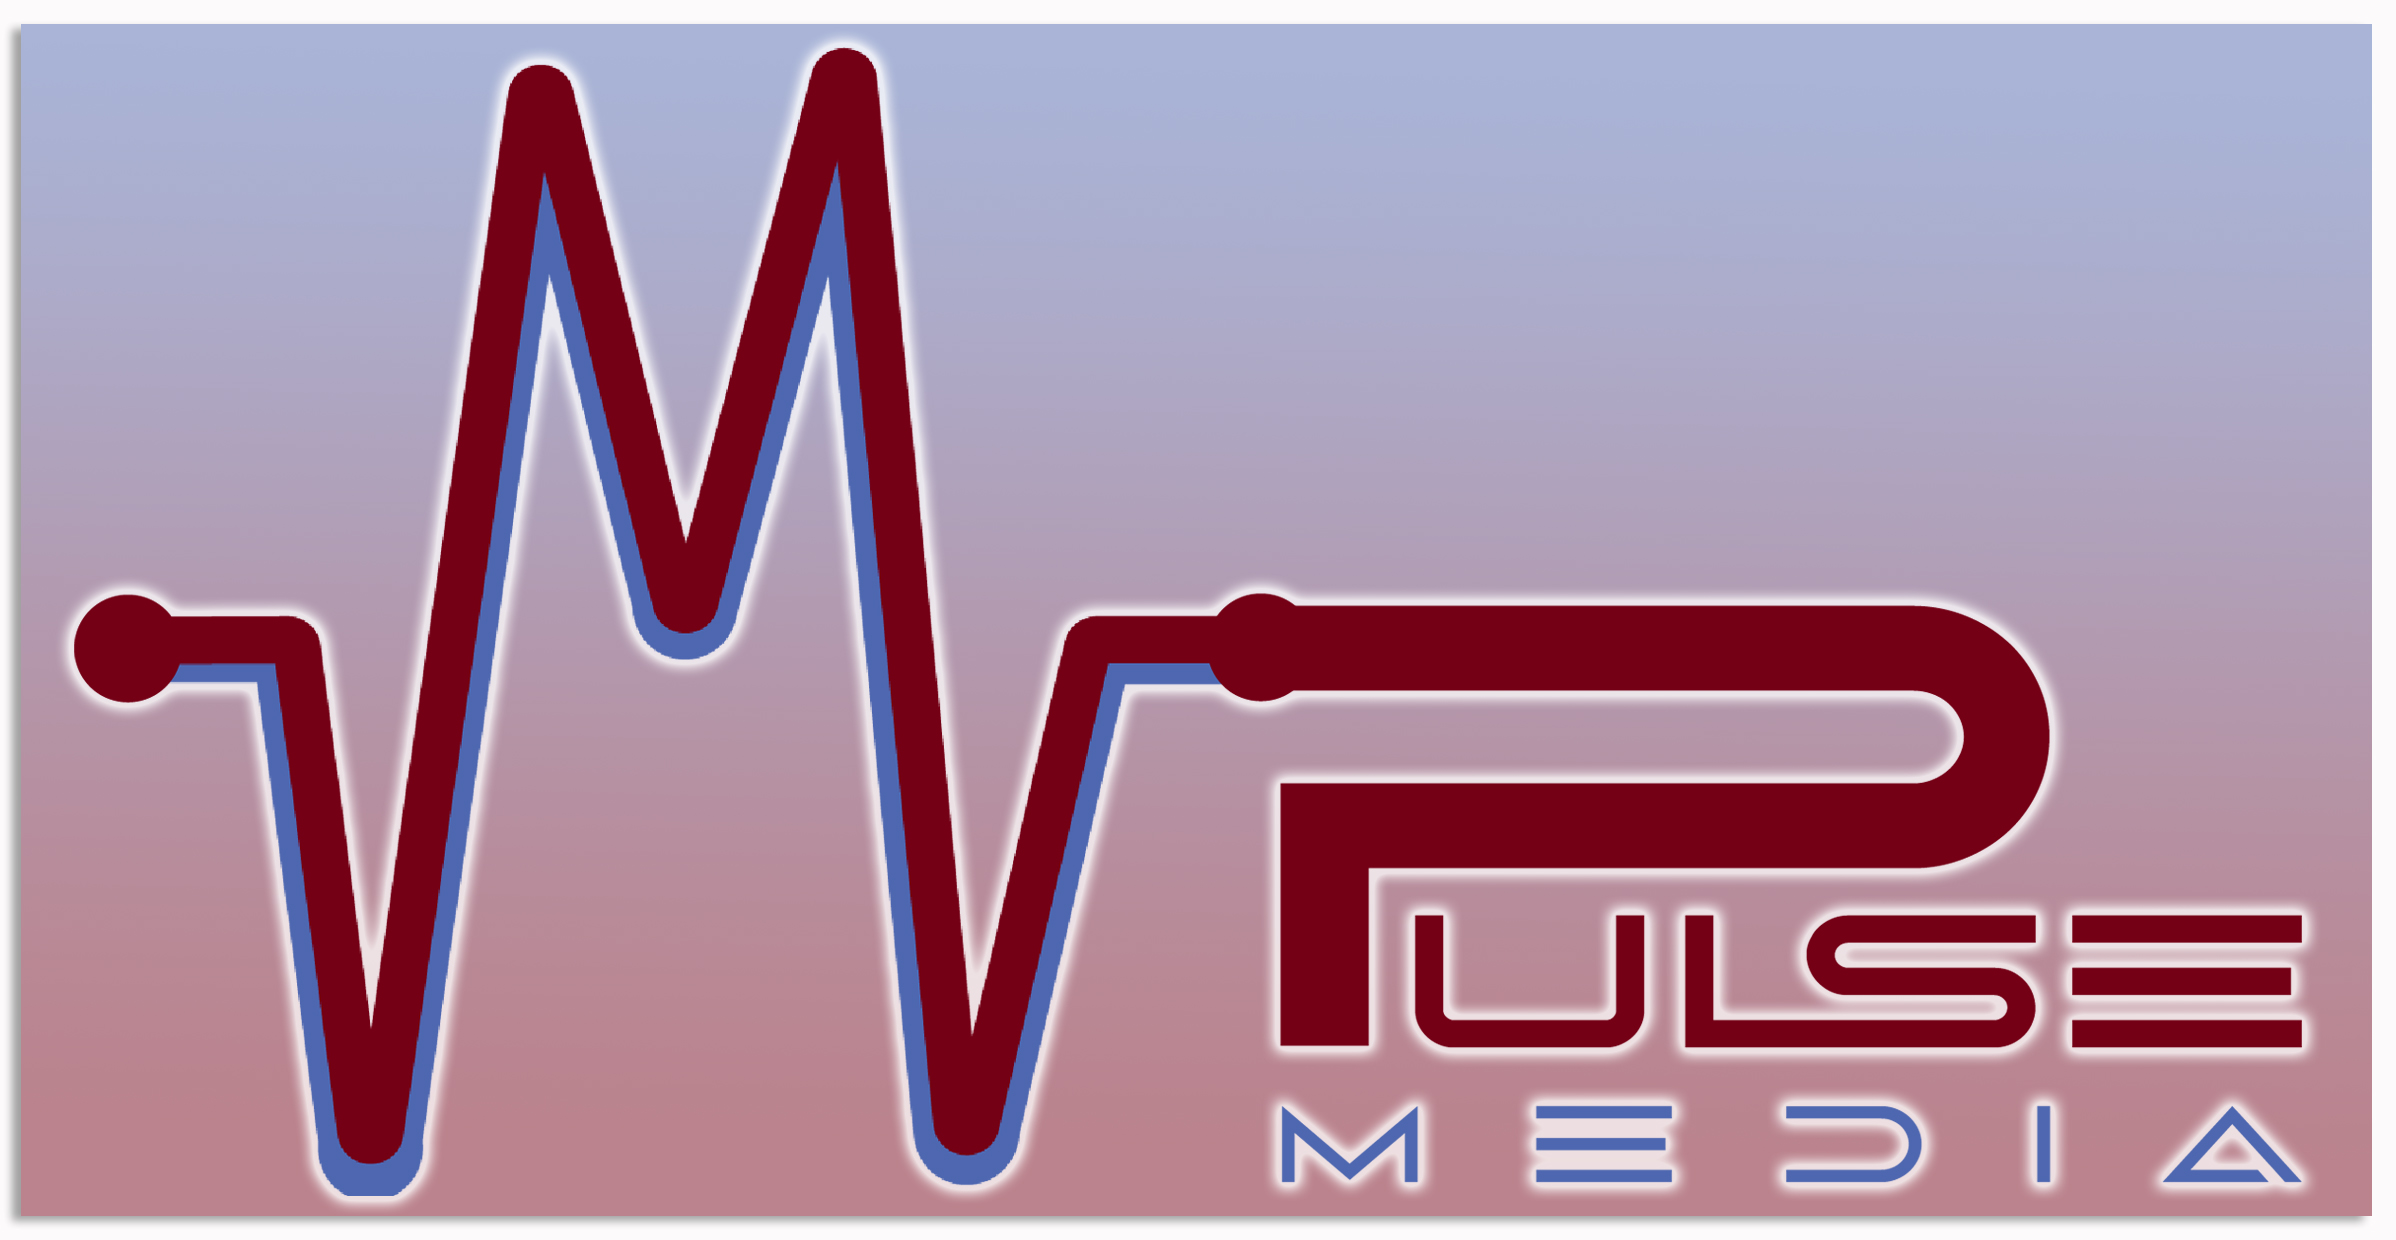 Mpulse media logo final